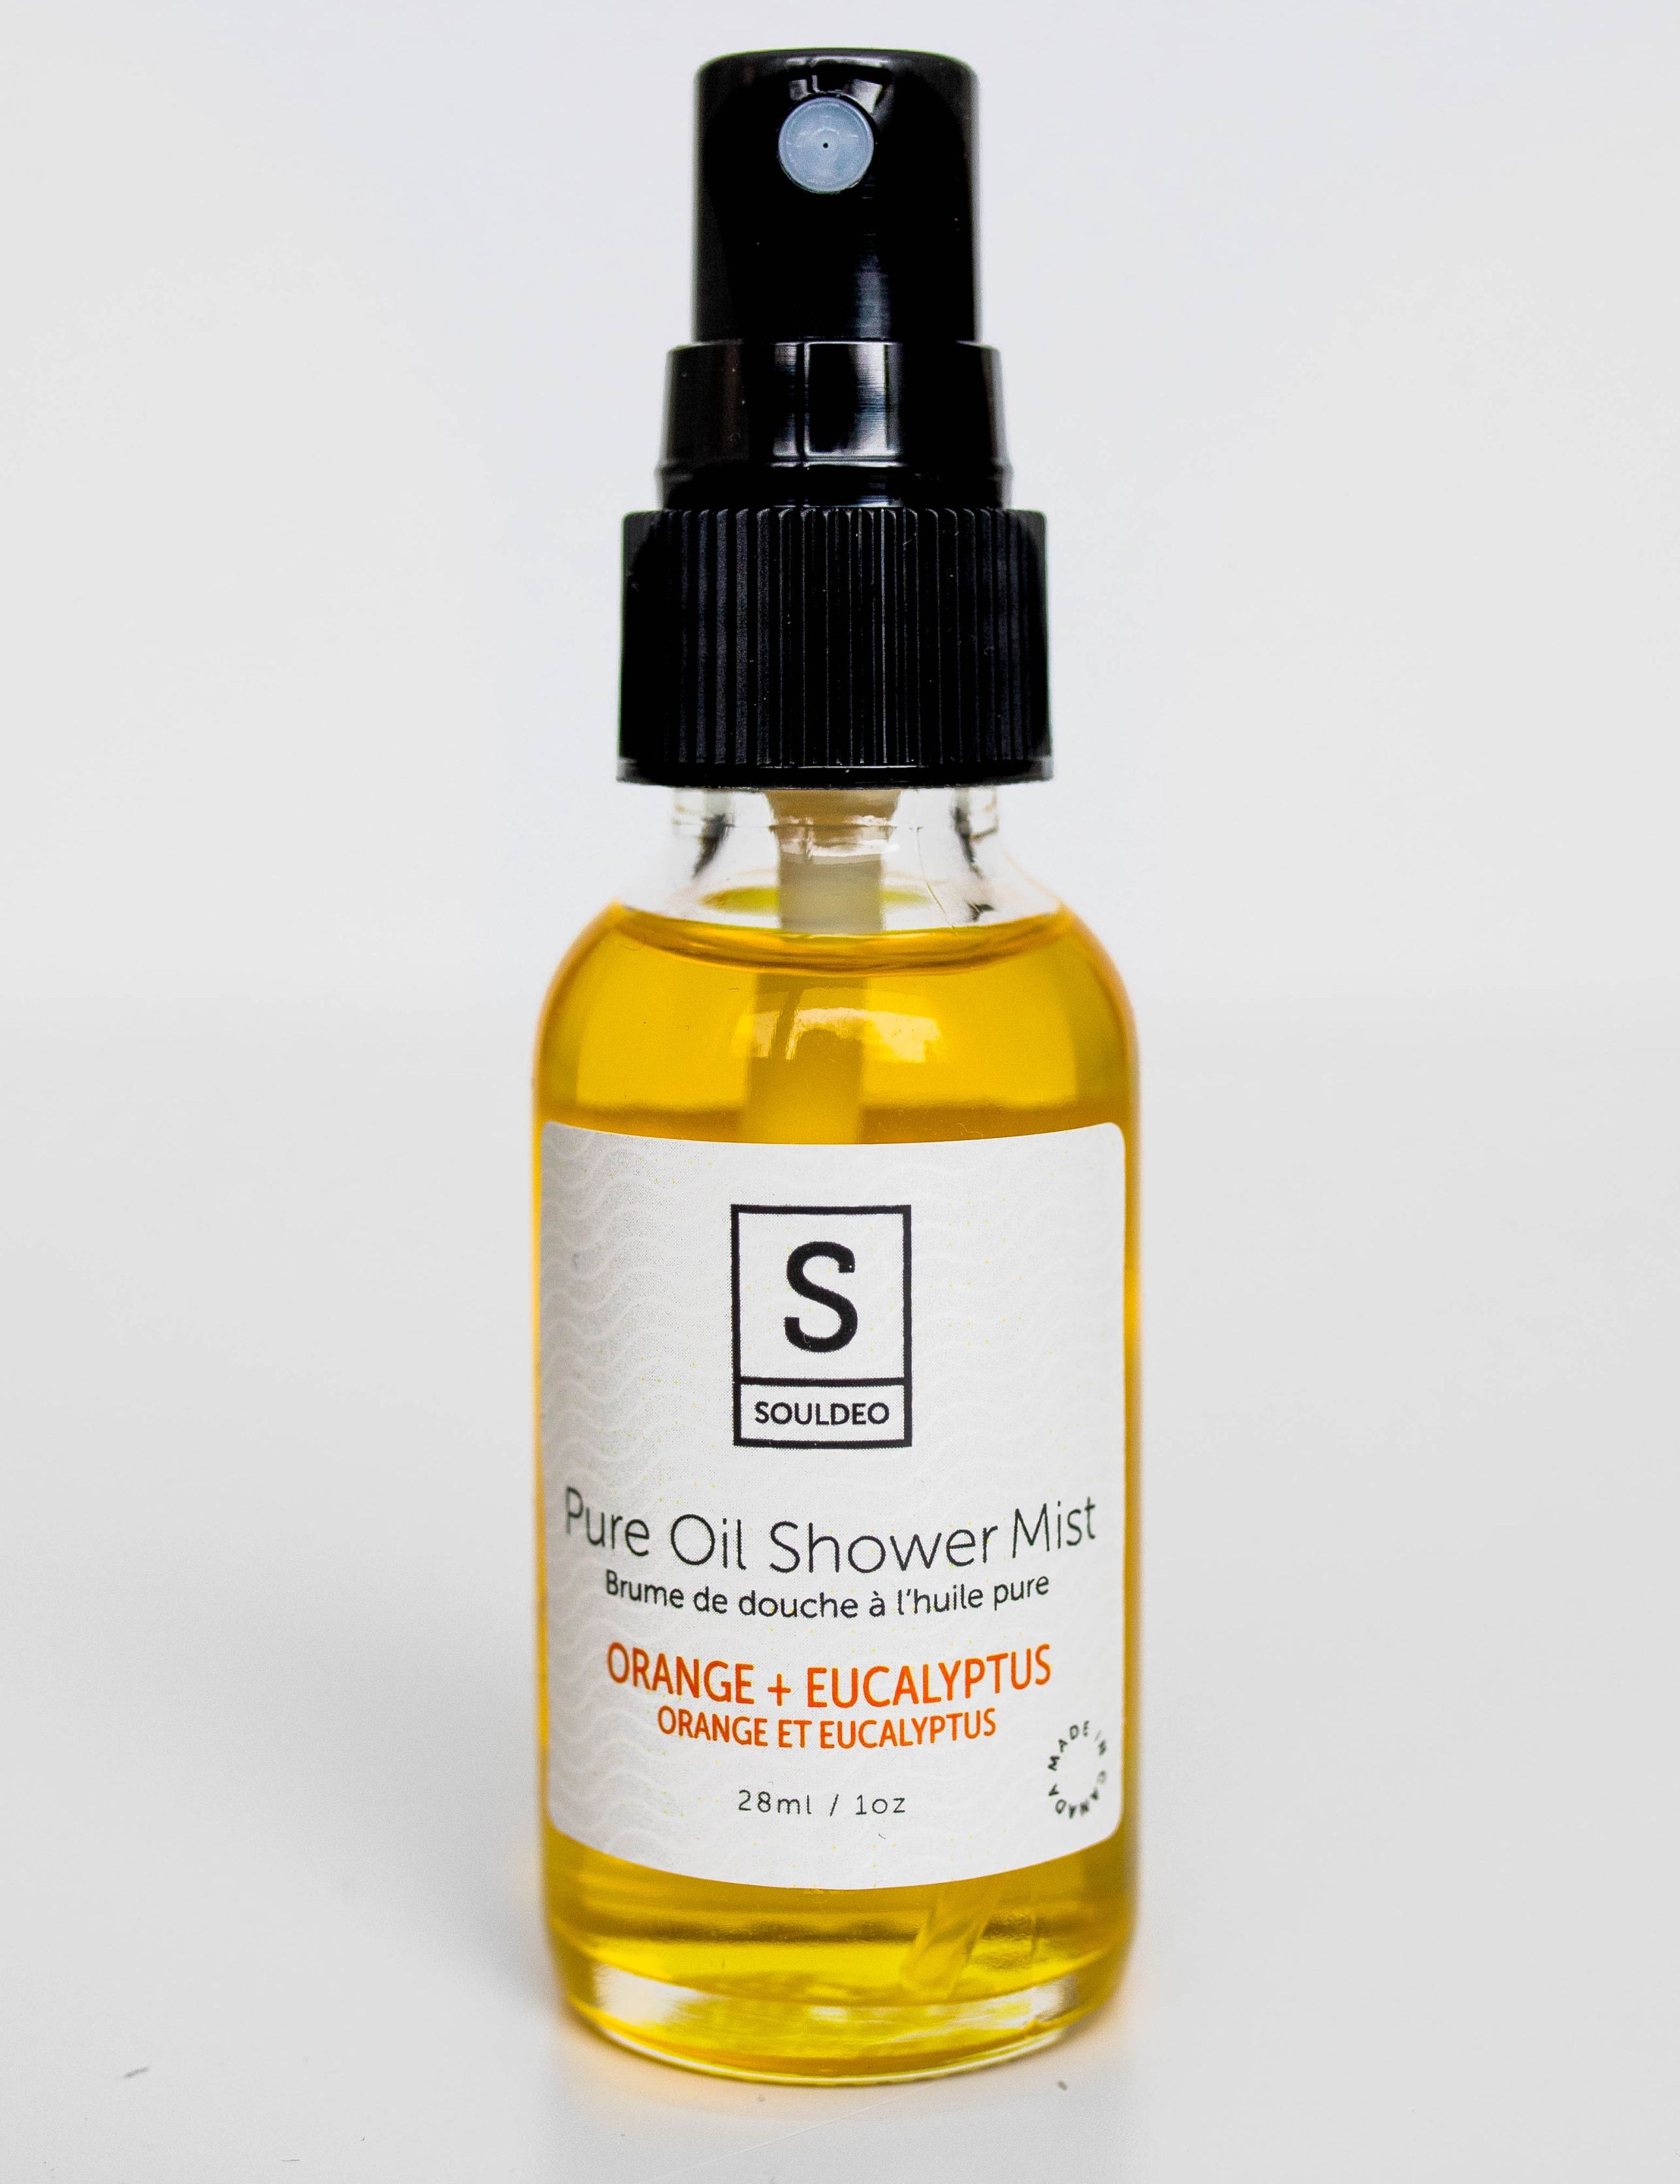 Orange + Eucalyptus - Pure Oil Shower Mist